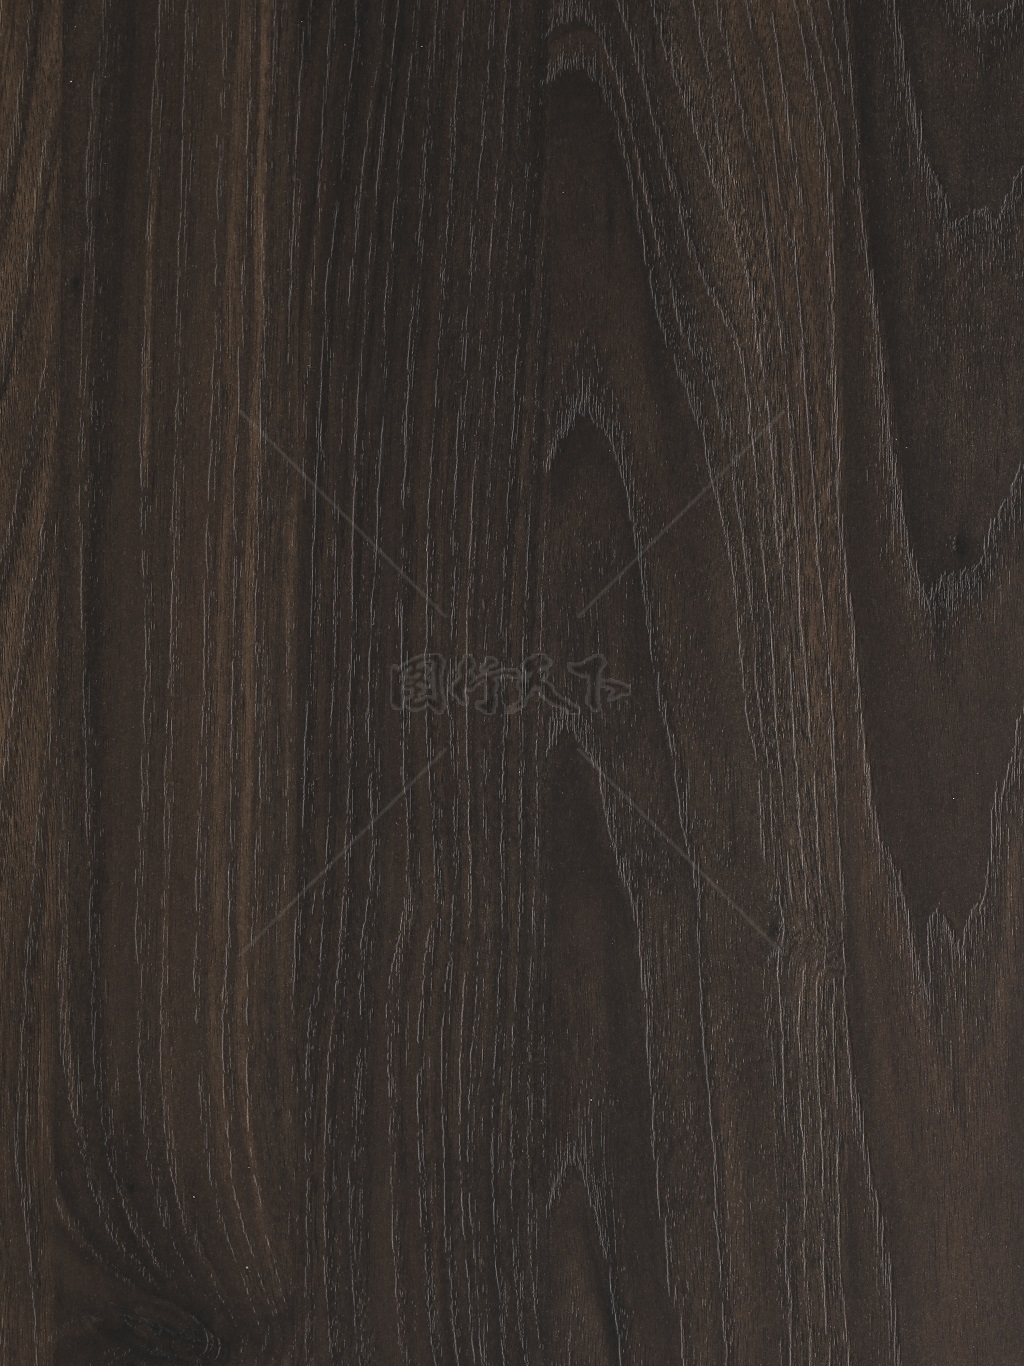 高清木纹纹理背景图案贴图毛孔可见深色木纹